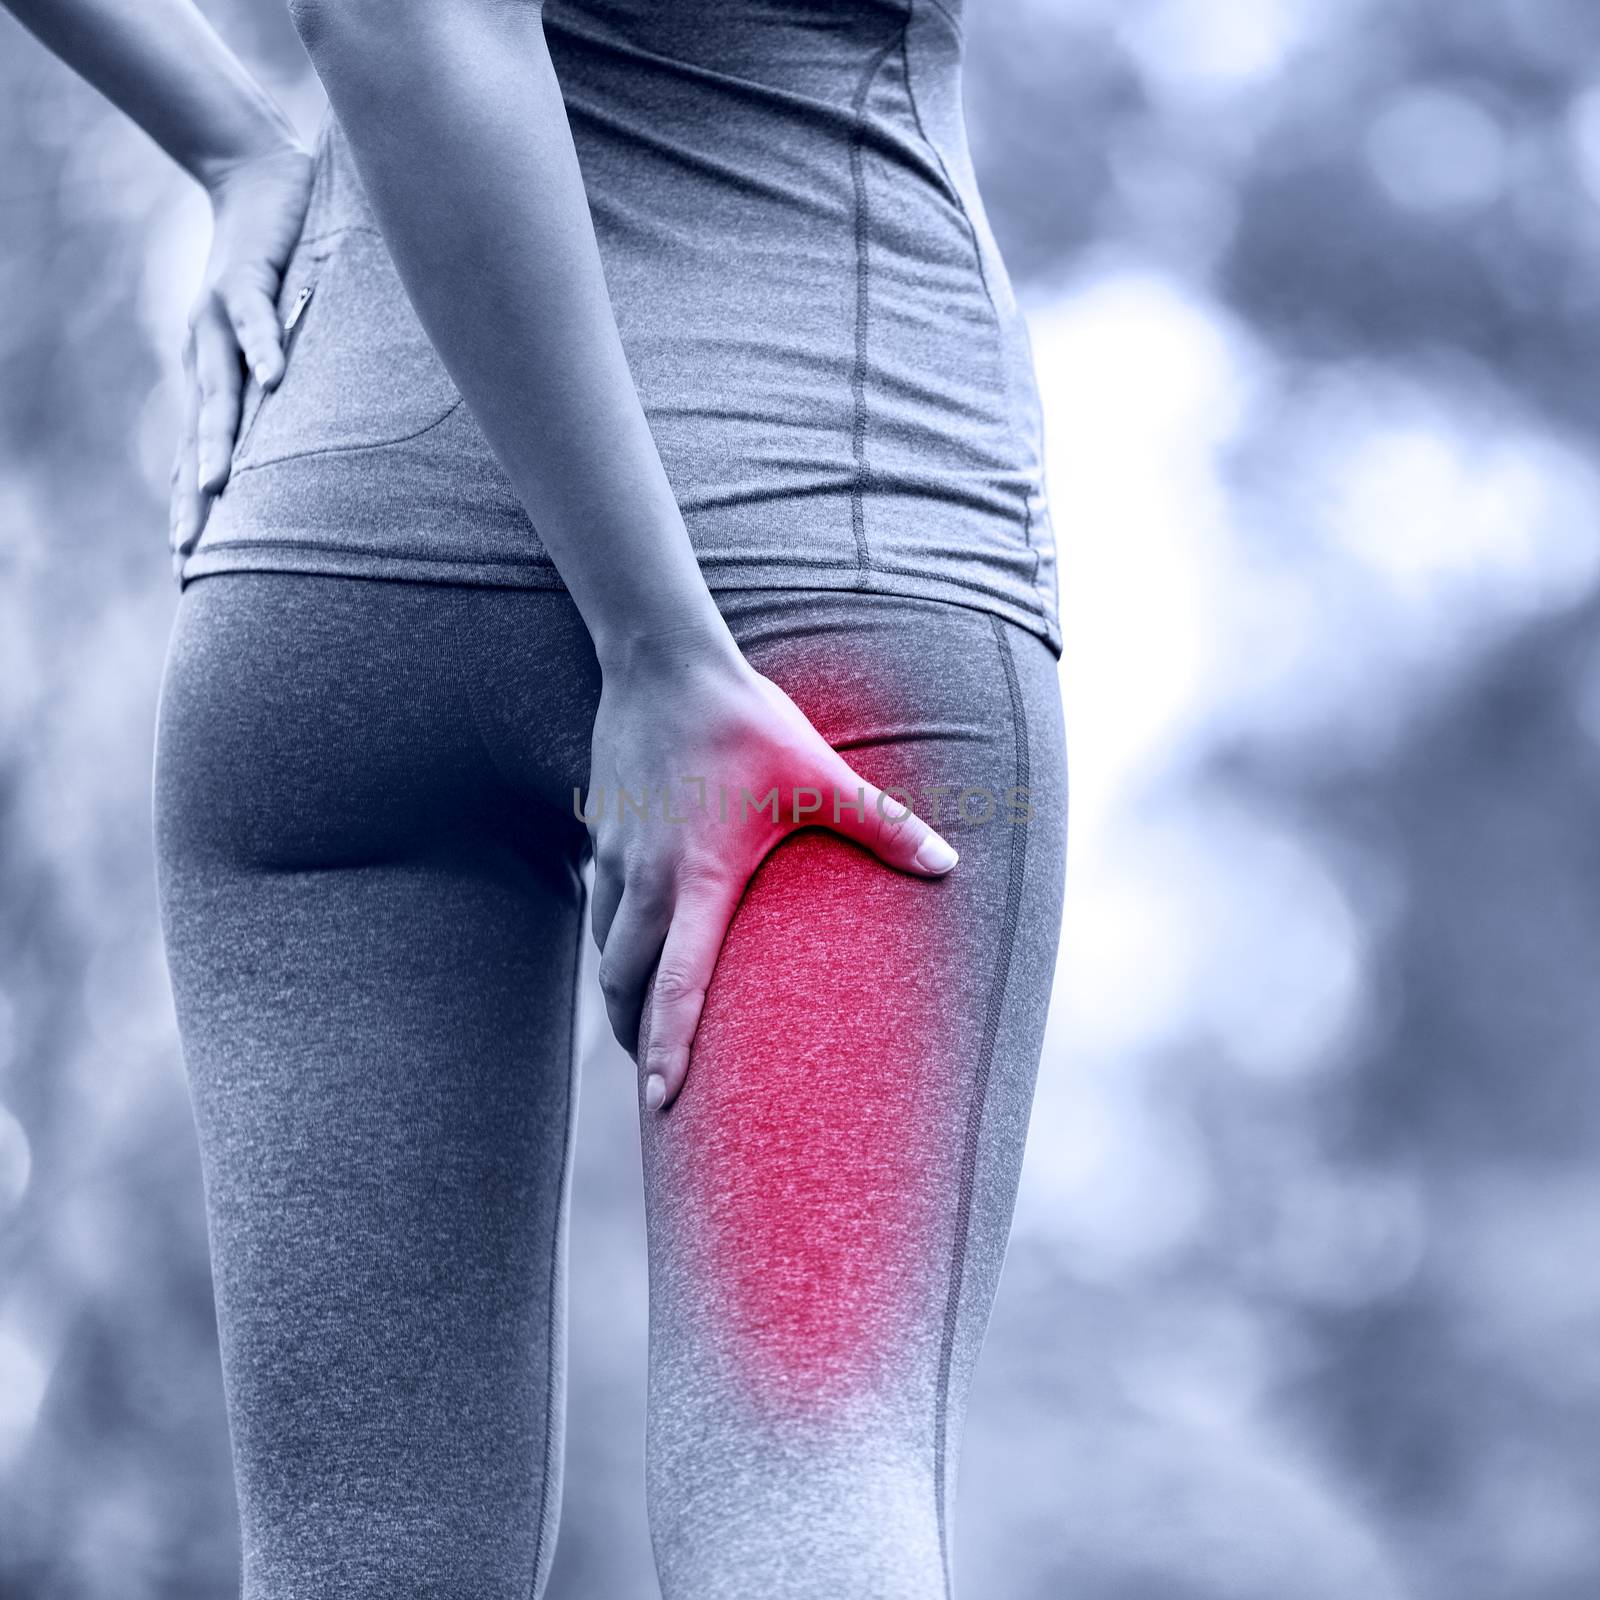 Hamstring sprain or cramps - Running sports injury by Maridav